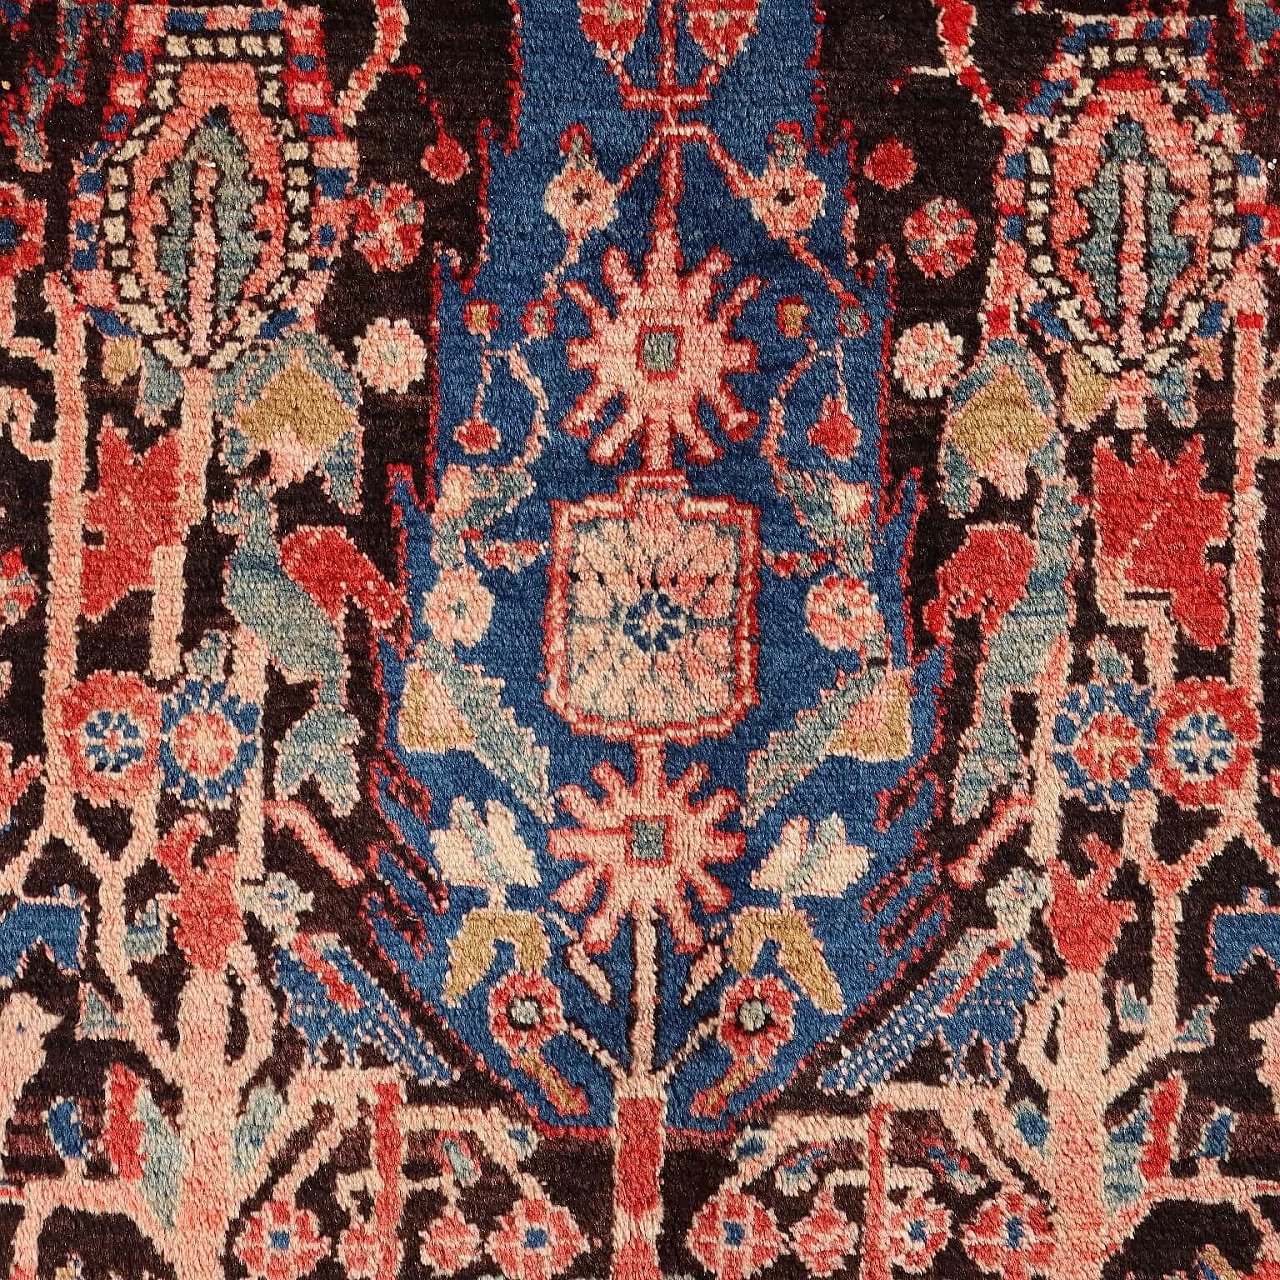 Iranian wool and cotton Malayer rug 4